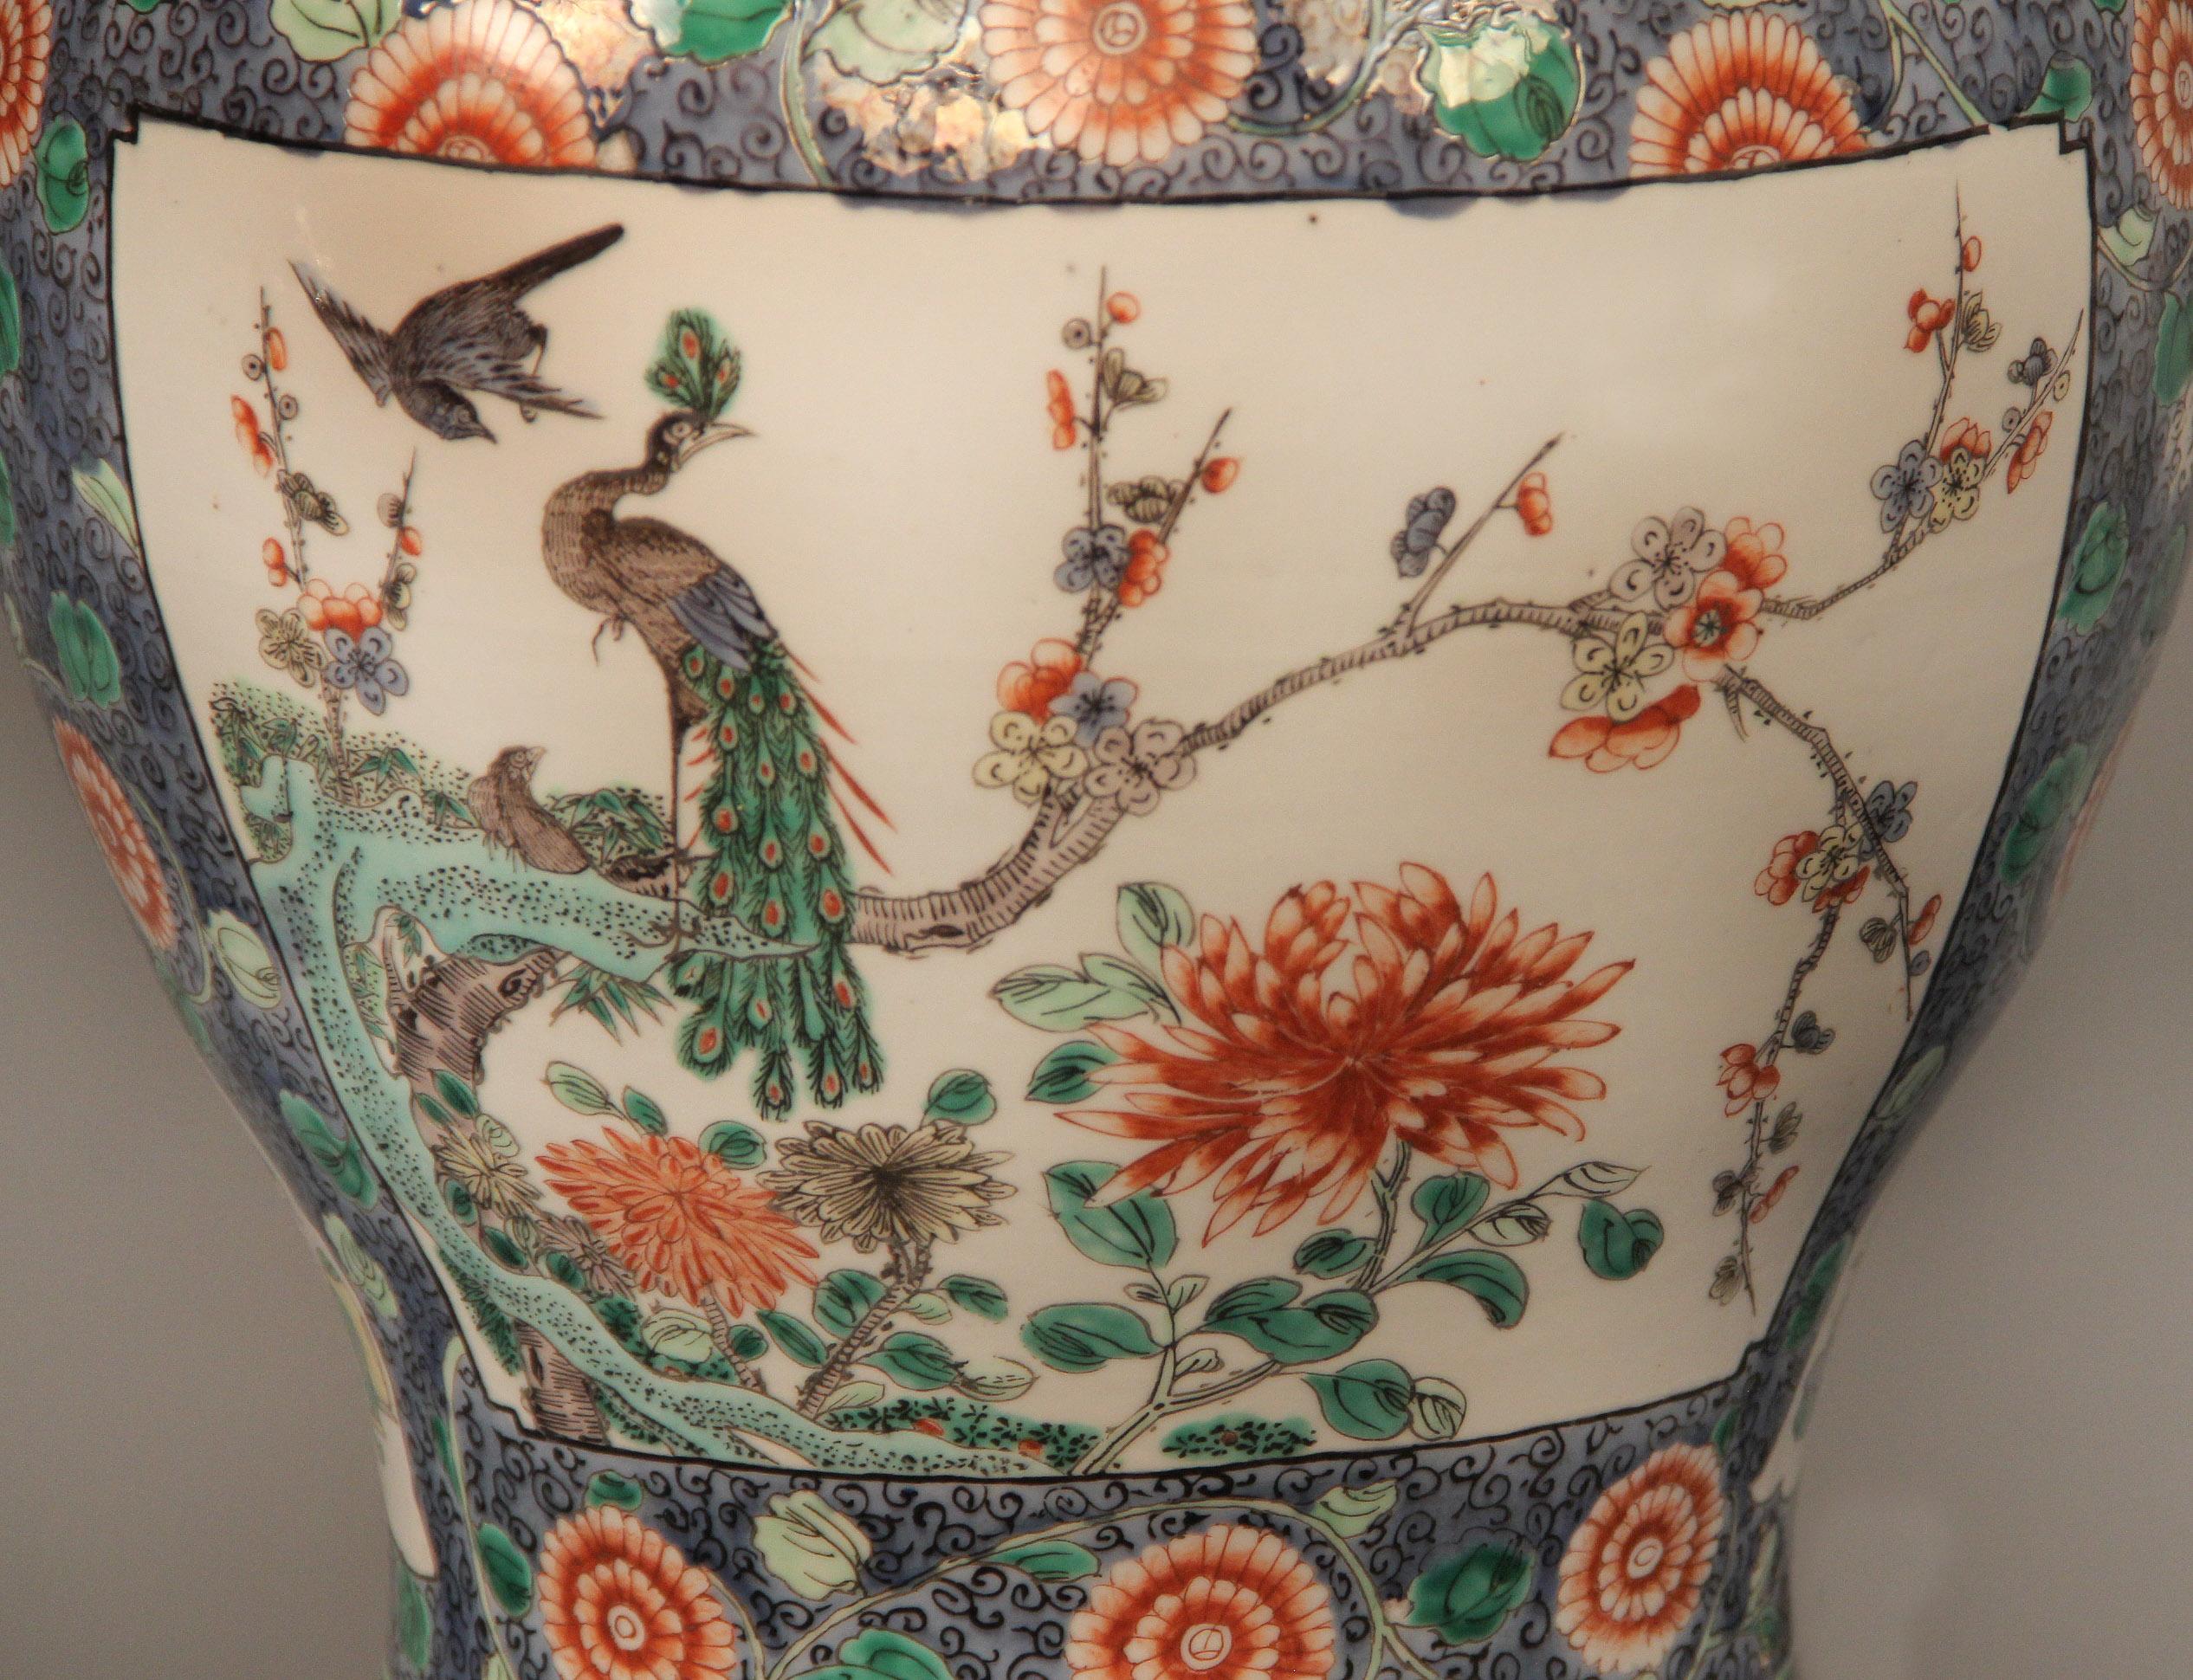 Vase en porcelaine de Chine de grande qualité, datant de la fin du 19ème siècle, monté sur bronze doré

Décoré d'oiseaux et de compositions florales, avec trois dauphins en bronze doré comme pieds, le tout reposant sur une base en bronze.